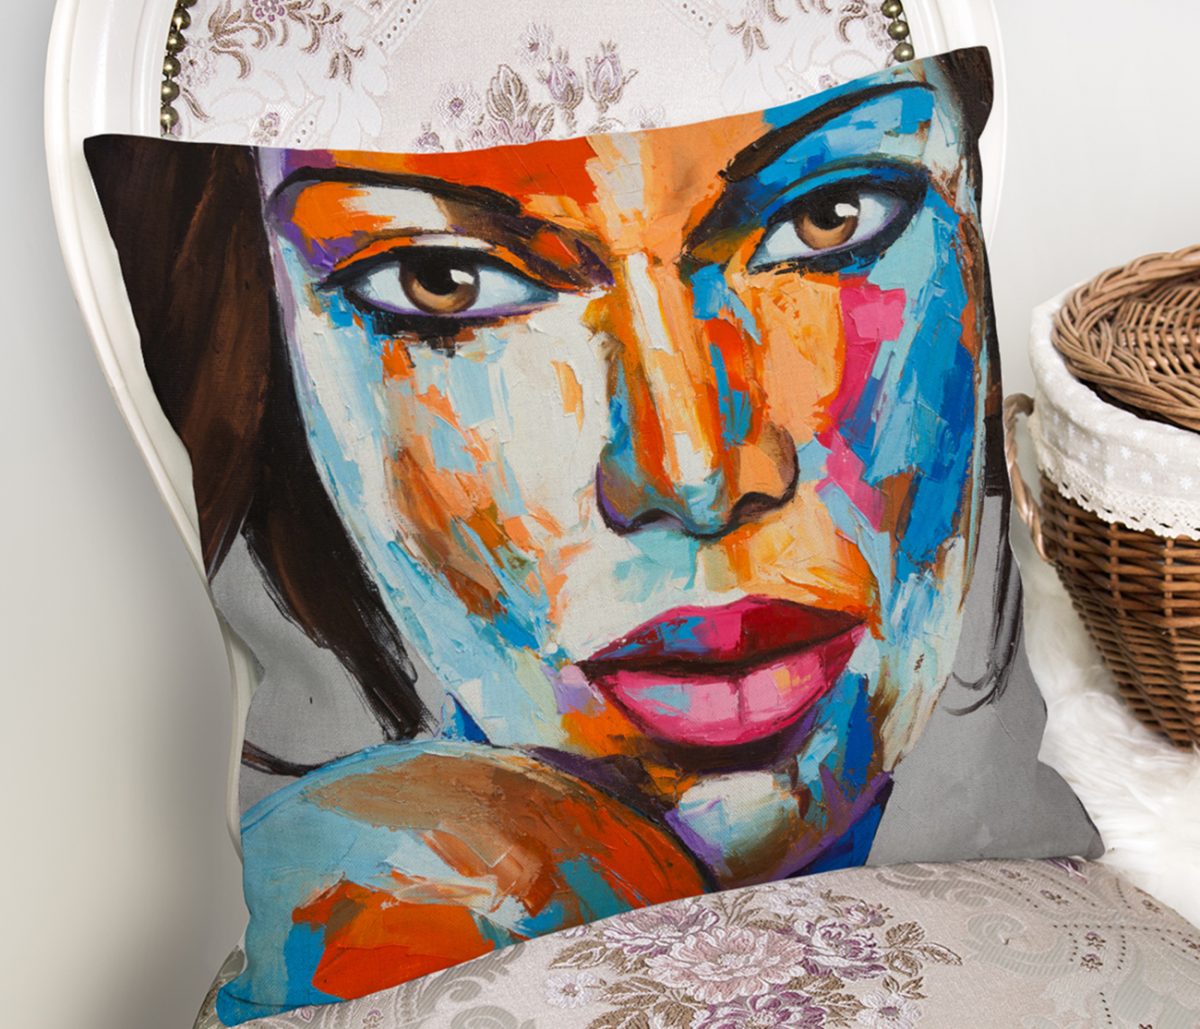 Sulu Boyalı Kadın Yüzlü Dekoratif Modern Kılıfl Realhomes